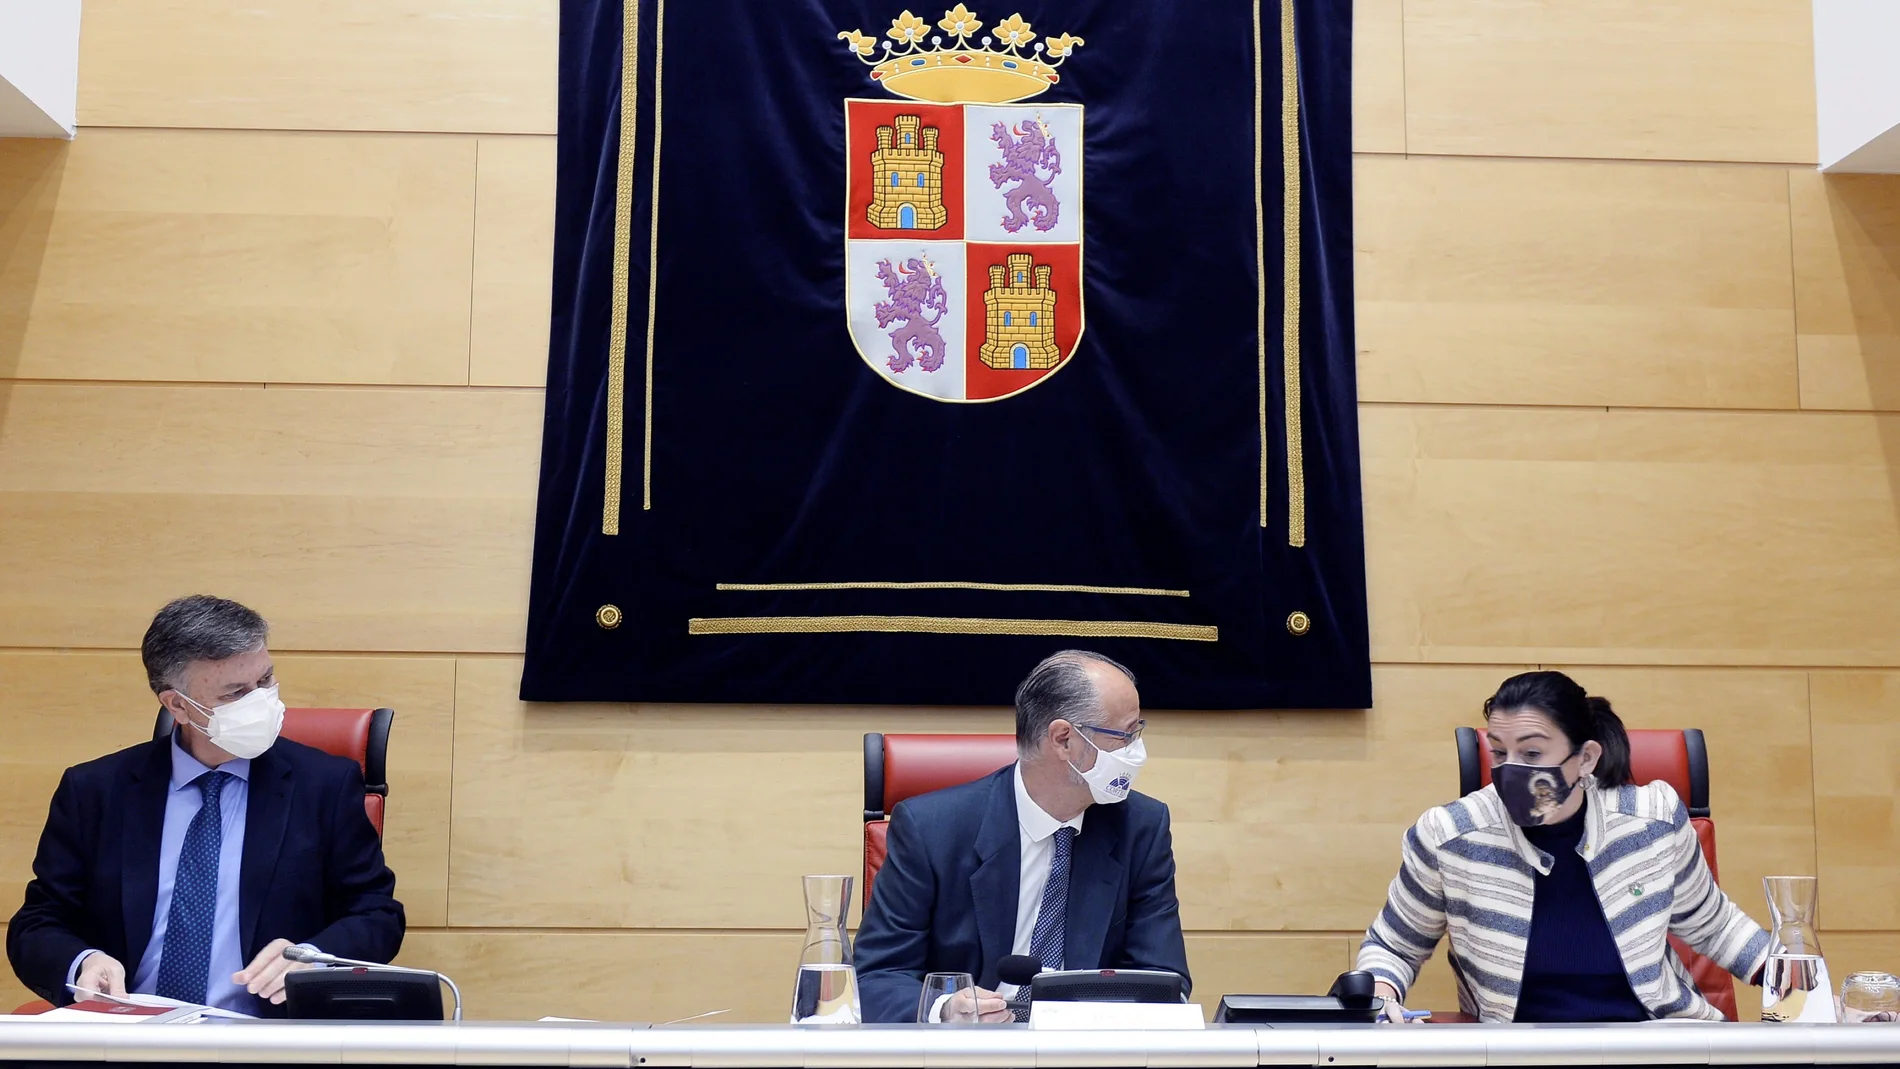 El presidente de las Cortes de Castilla y León, Luis Fuentes (c), junto a los vicepresidentes primero y segundo, Francisco Vázquez (i) y Ana Sánchez (d), durante la reunión de la Mesa de las Cortes en Valladolid. EFE/Nacho Gallego